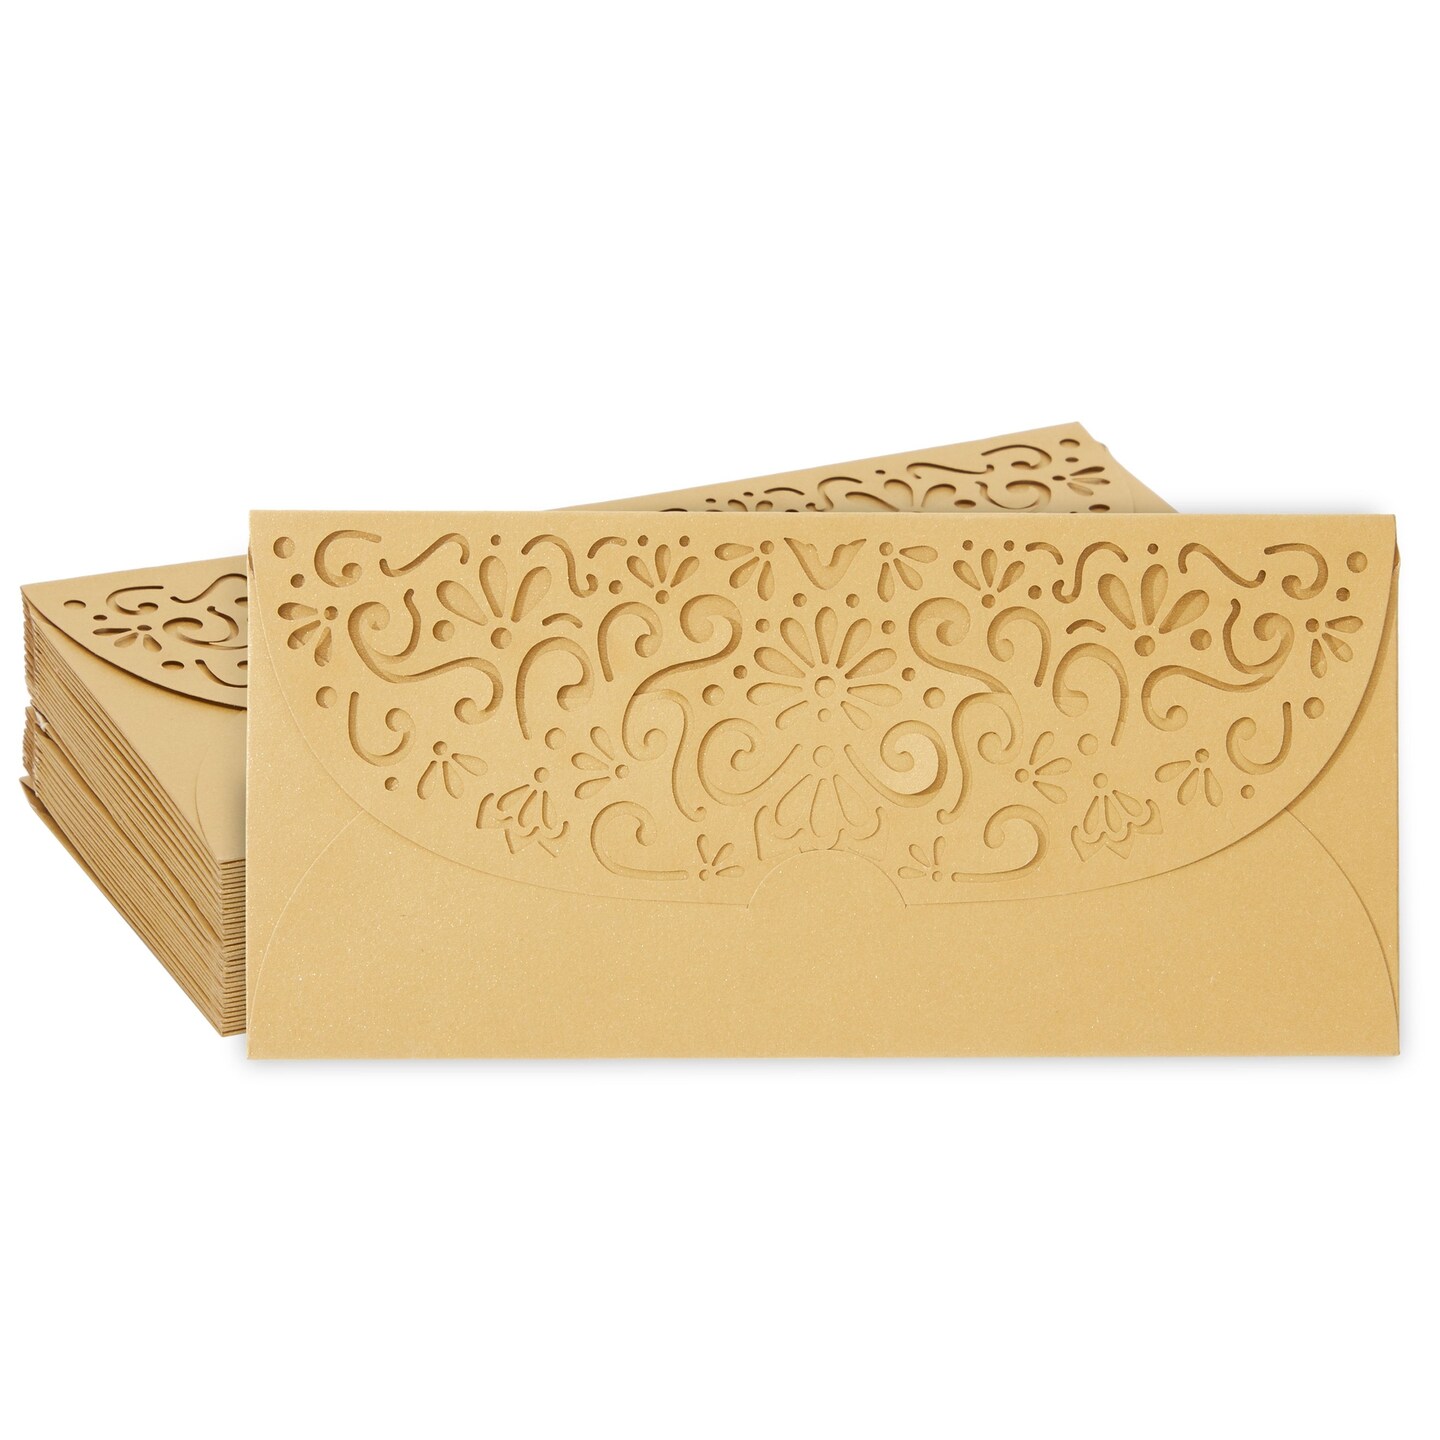 Honey Bee Theme Money Envelopes – Paperholic Design Studio